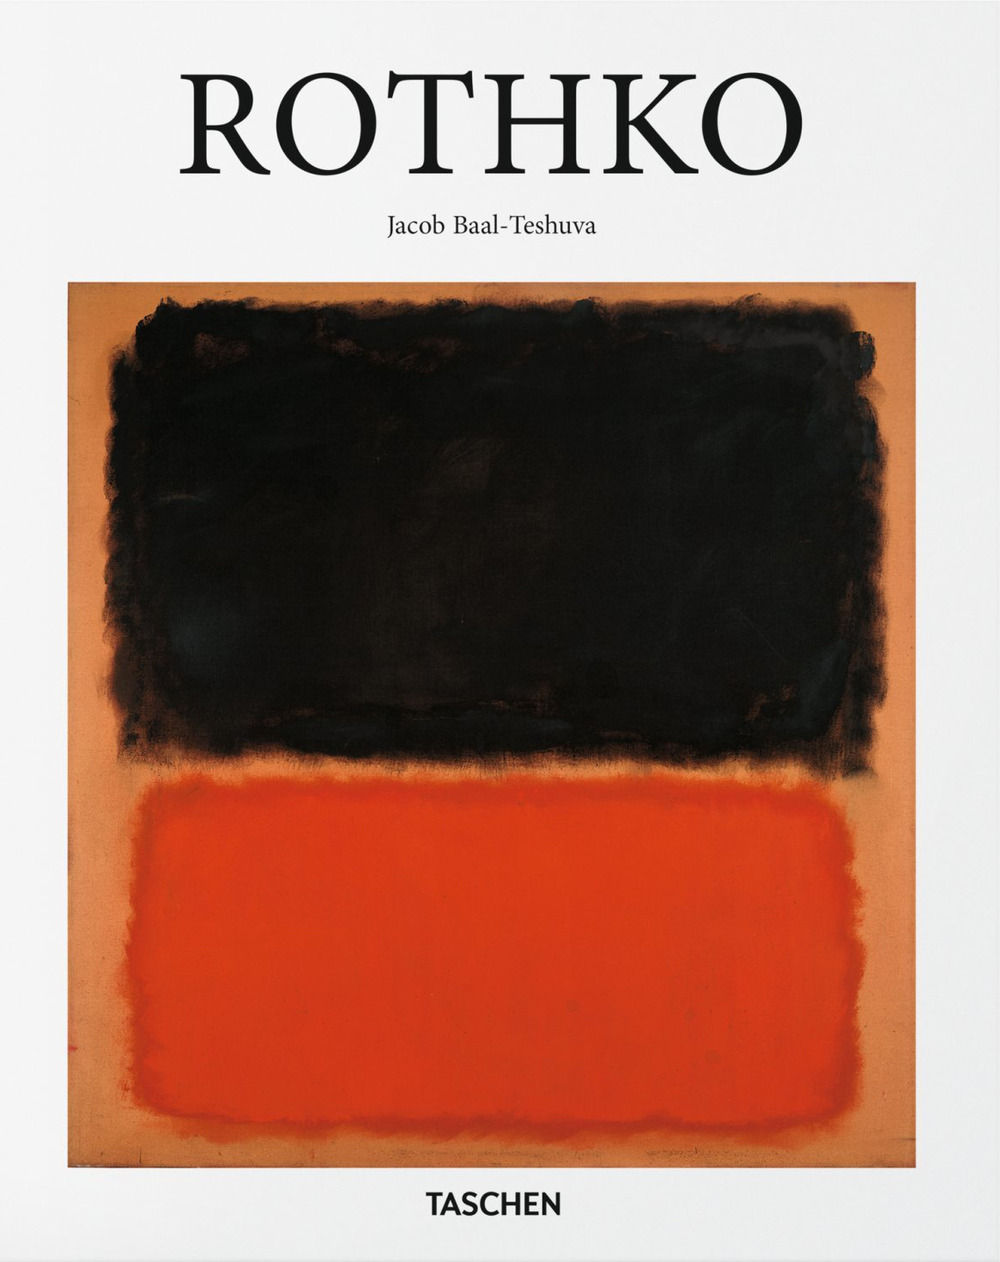 Rothko. Ediz. italiana